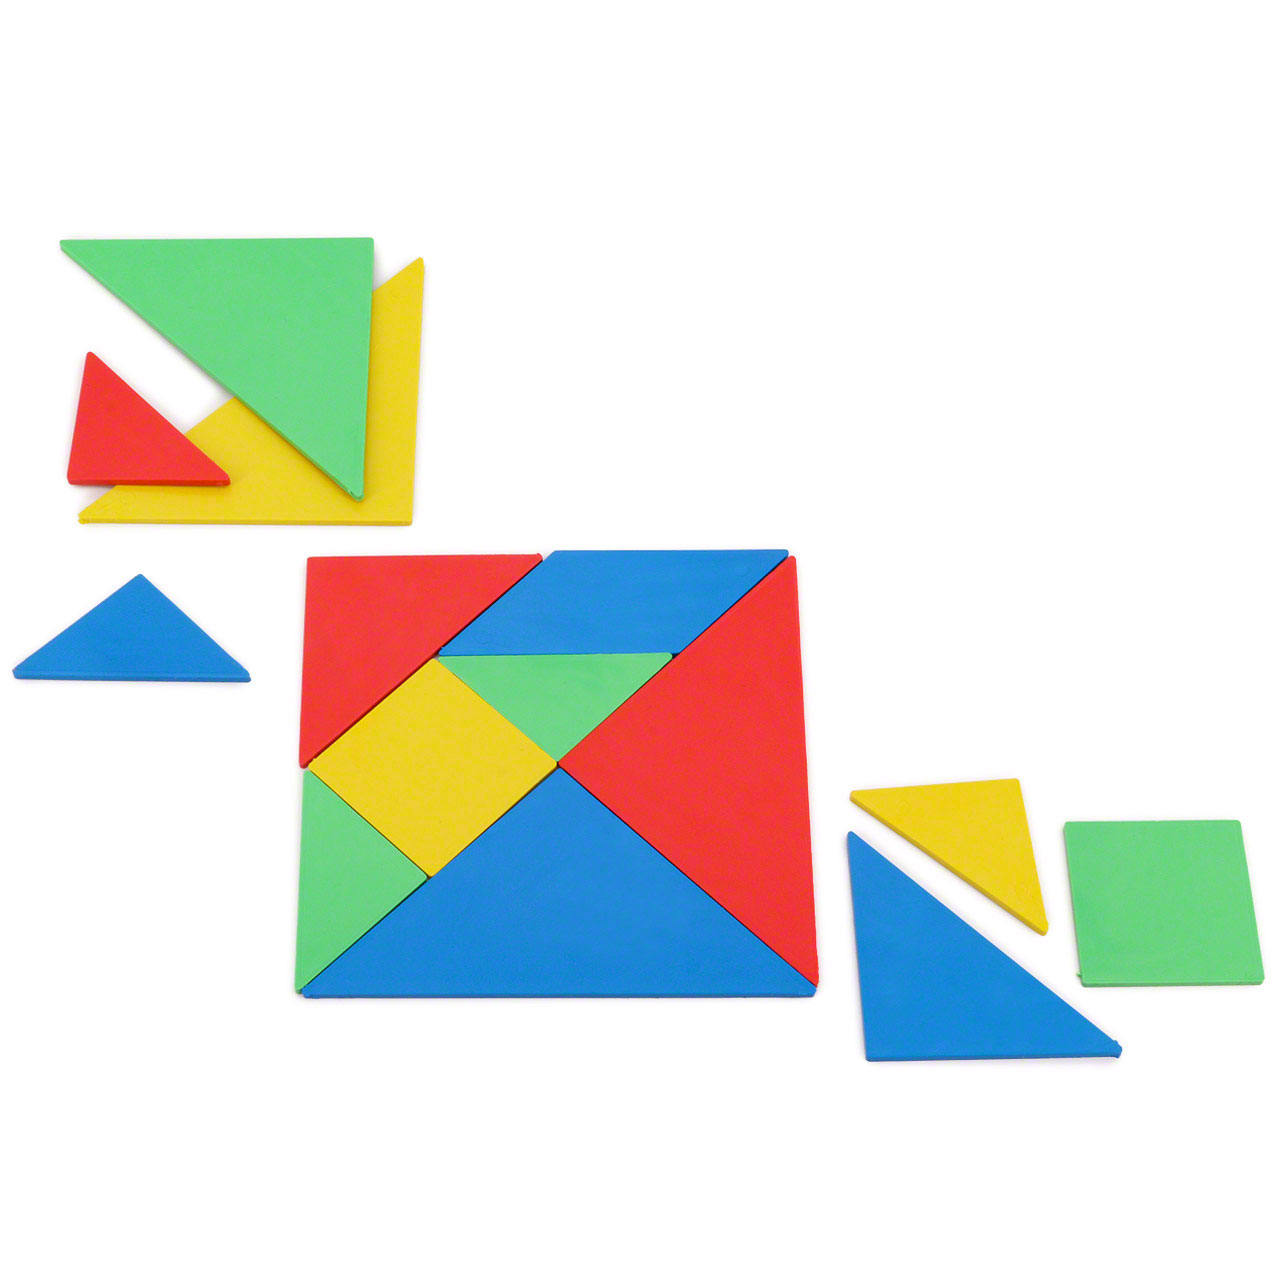 Hölz Tangram Puzzle Spielzeug Geometrie Lernspiel Formenspiel Kinder Geschenke 